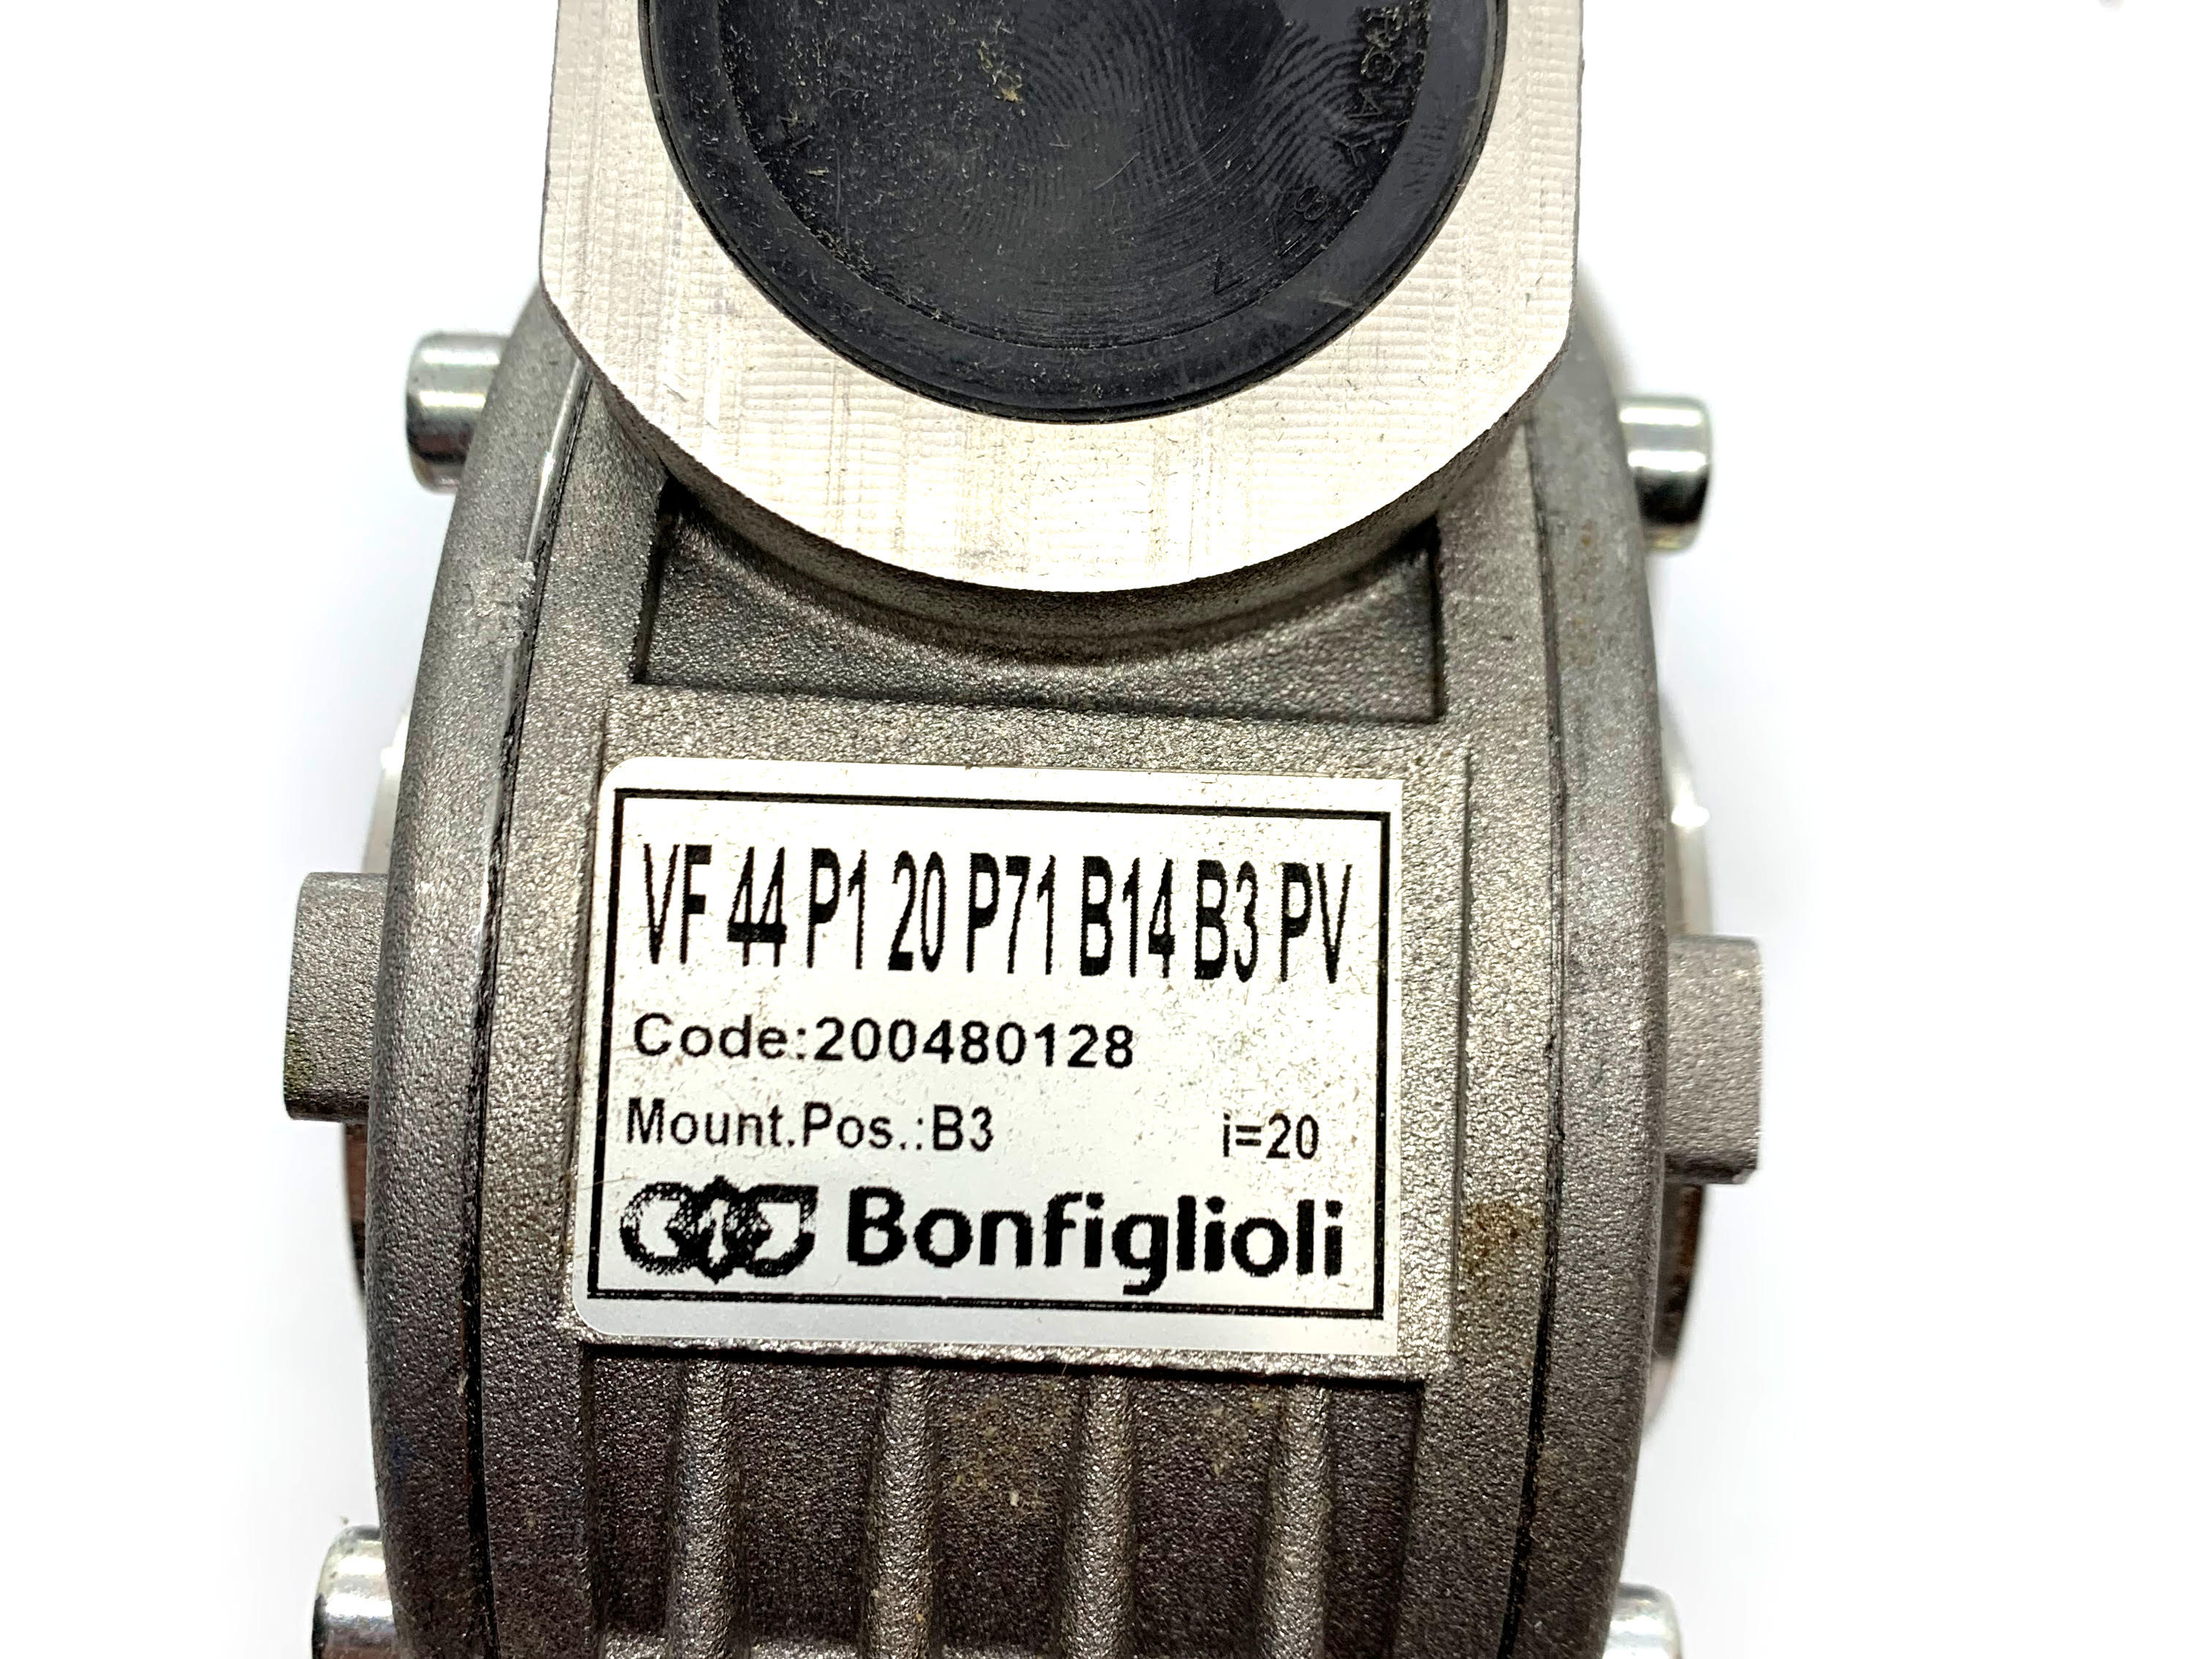 Bonfiglioli Reducer VF 44 P1 20P71B14B3PV - ppdistributors